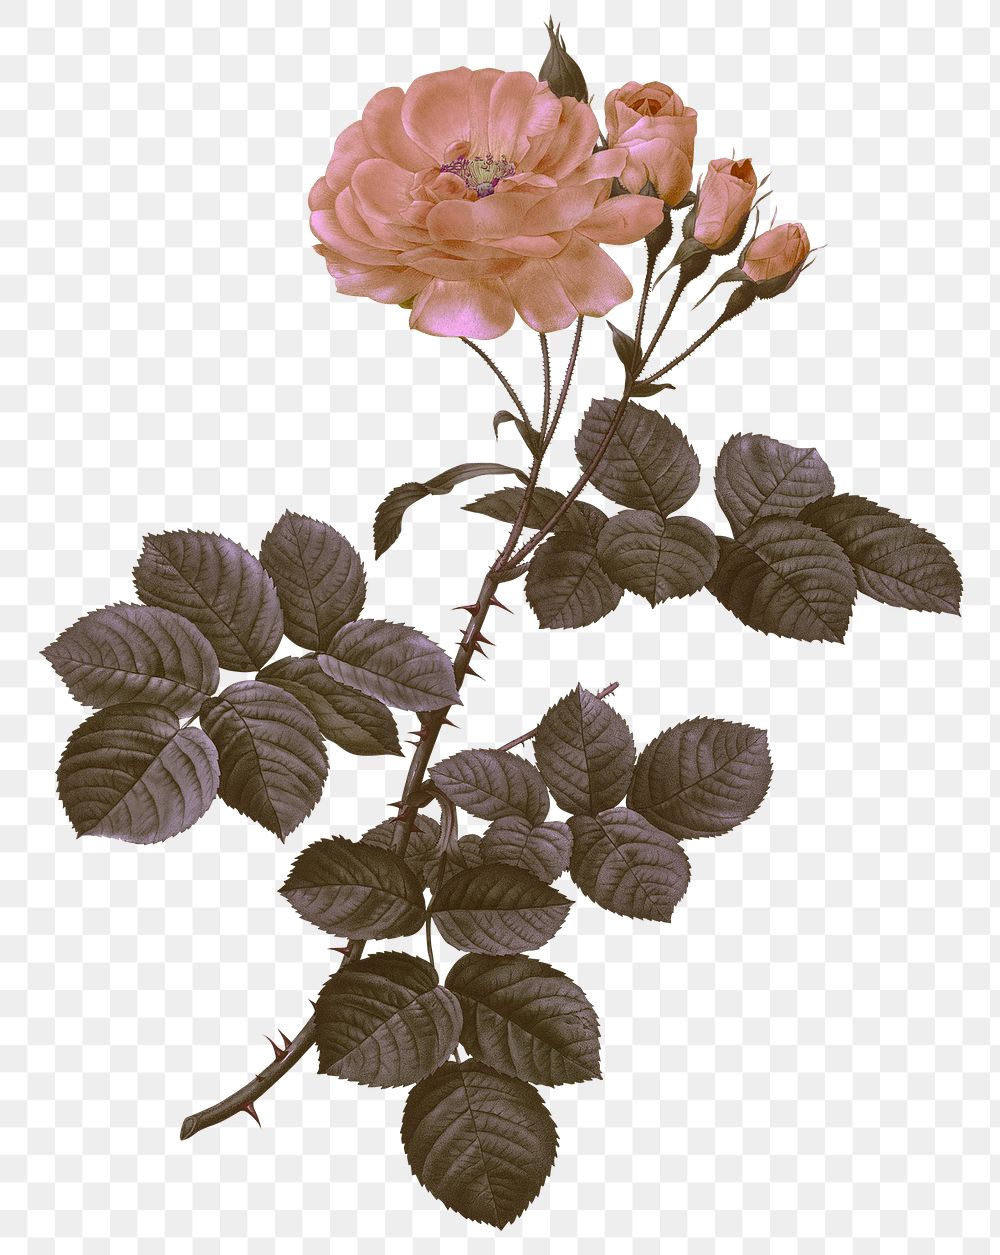 Vintage damask rose png floral sticker illustration, remixed from public domain artworks